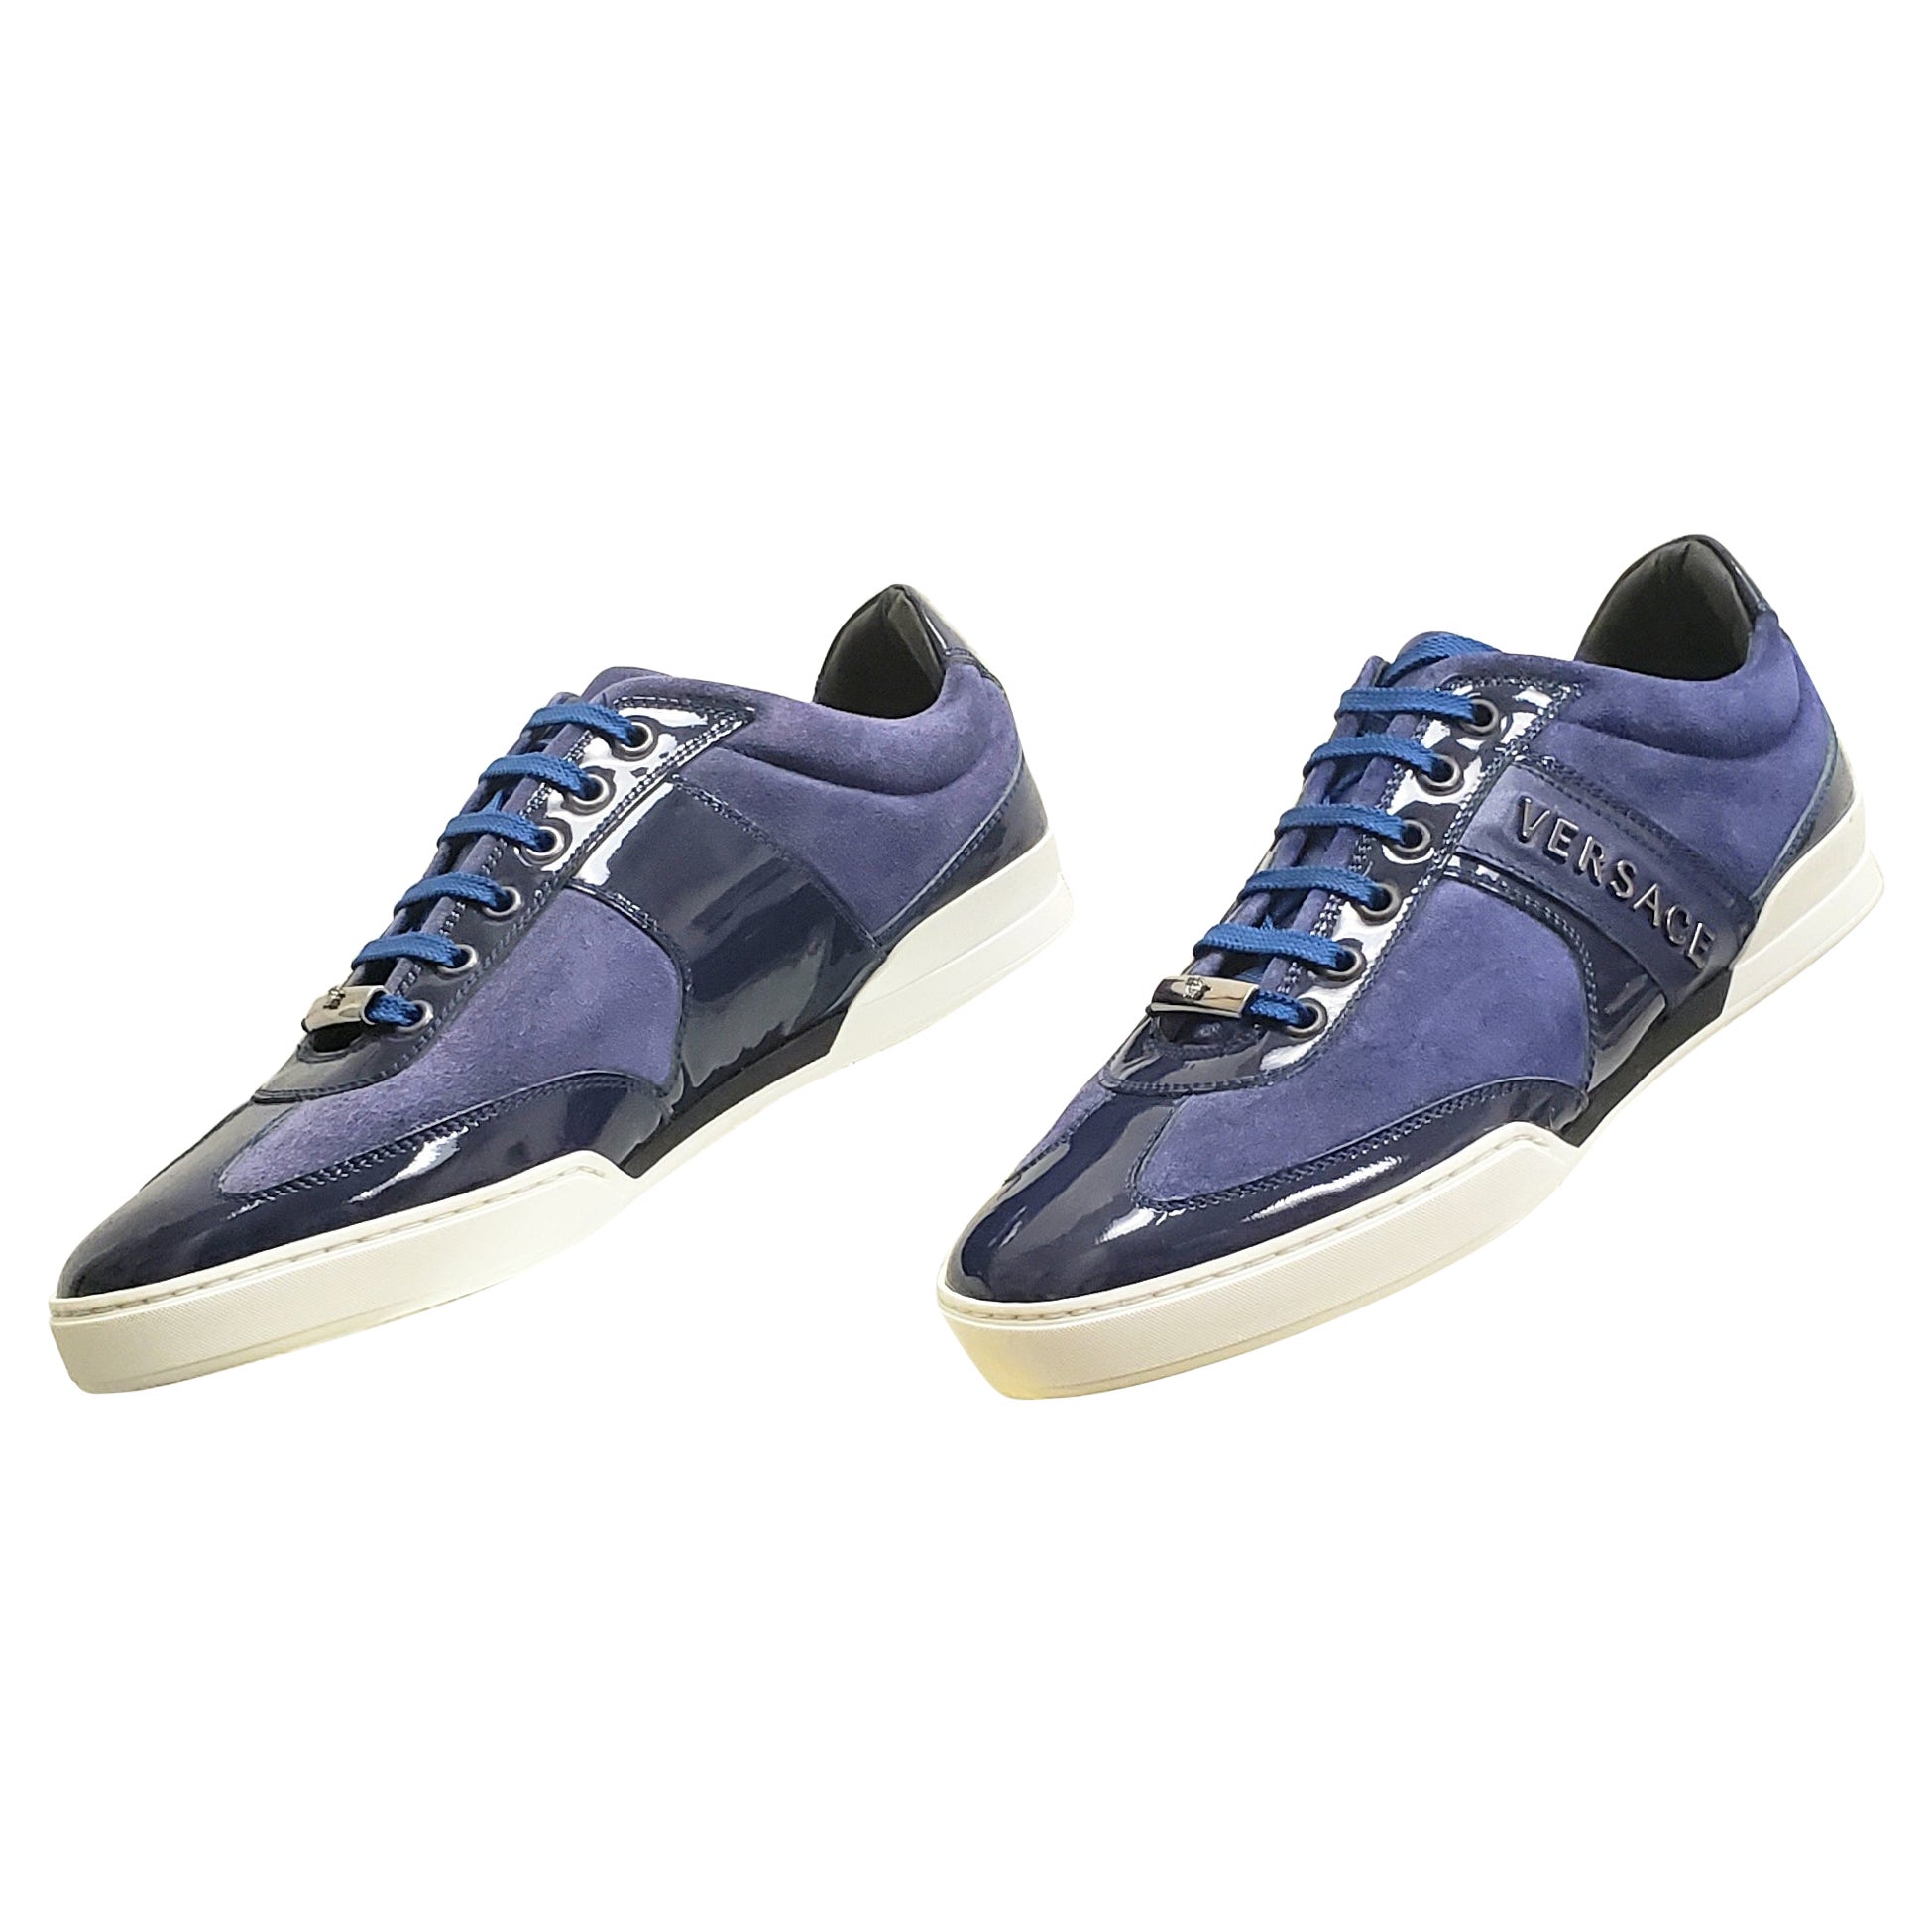 Chaussures neuves en cuir daim bleu foncé avec détails en cuir verni, taille 40 - 7 en vente